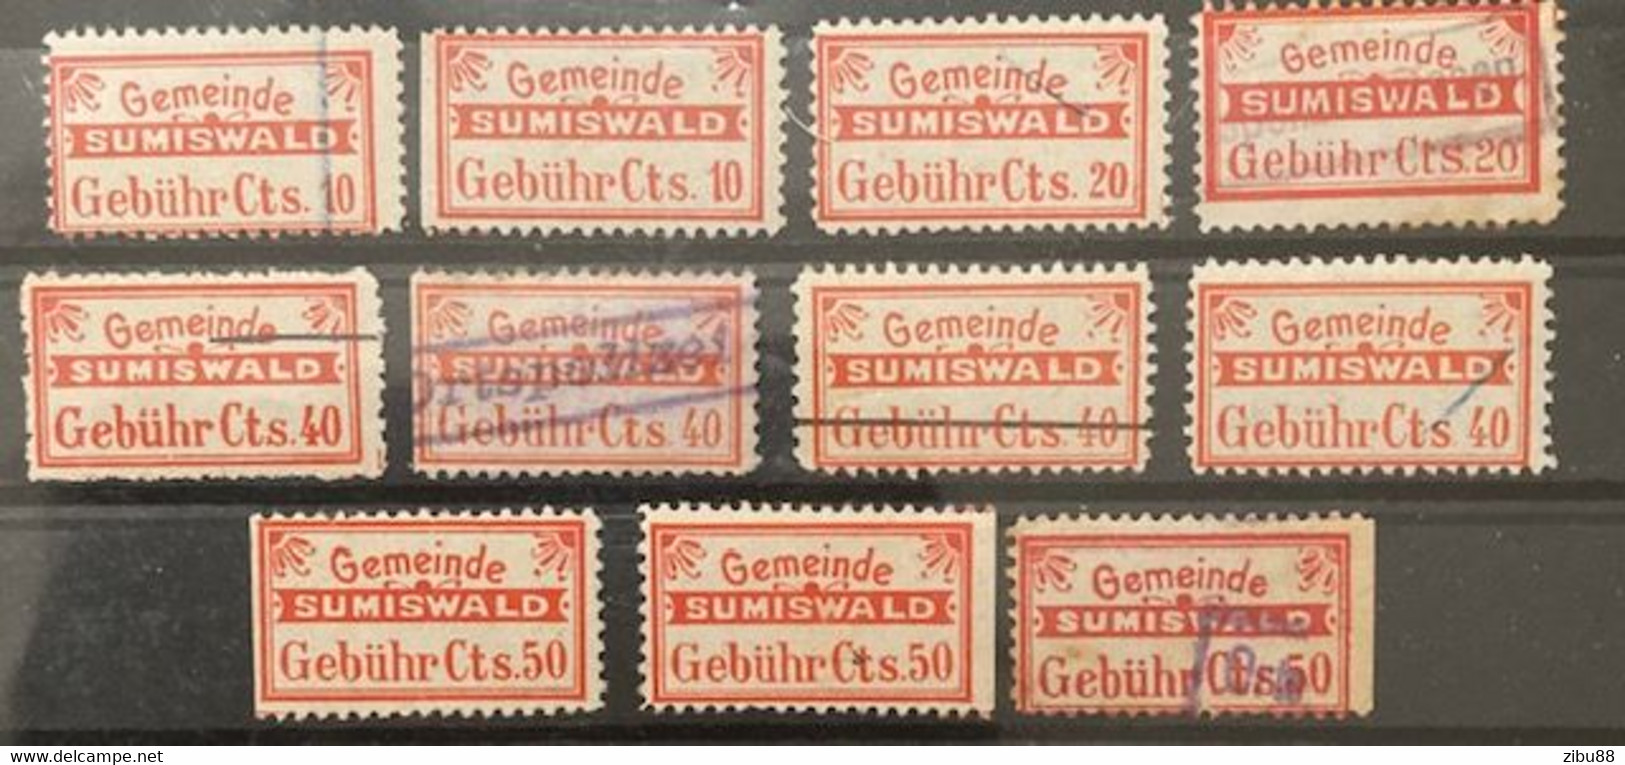 Fiskalmarken / Revenue Stamp Switzerland - Gemeinde Sumiswald BE - Revenue Stamps